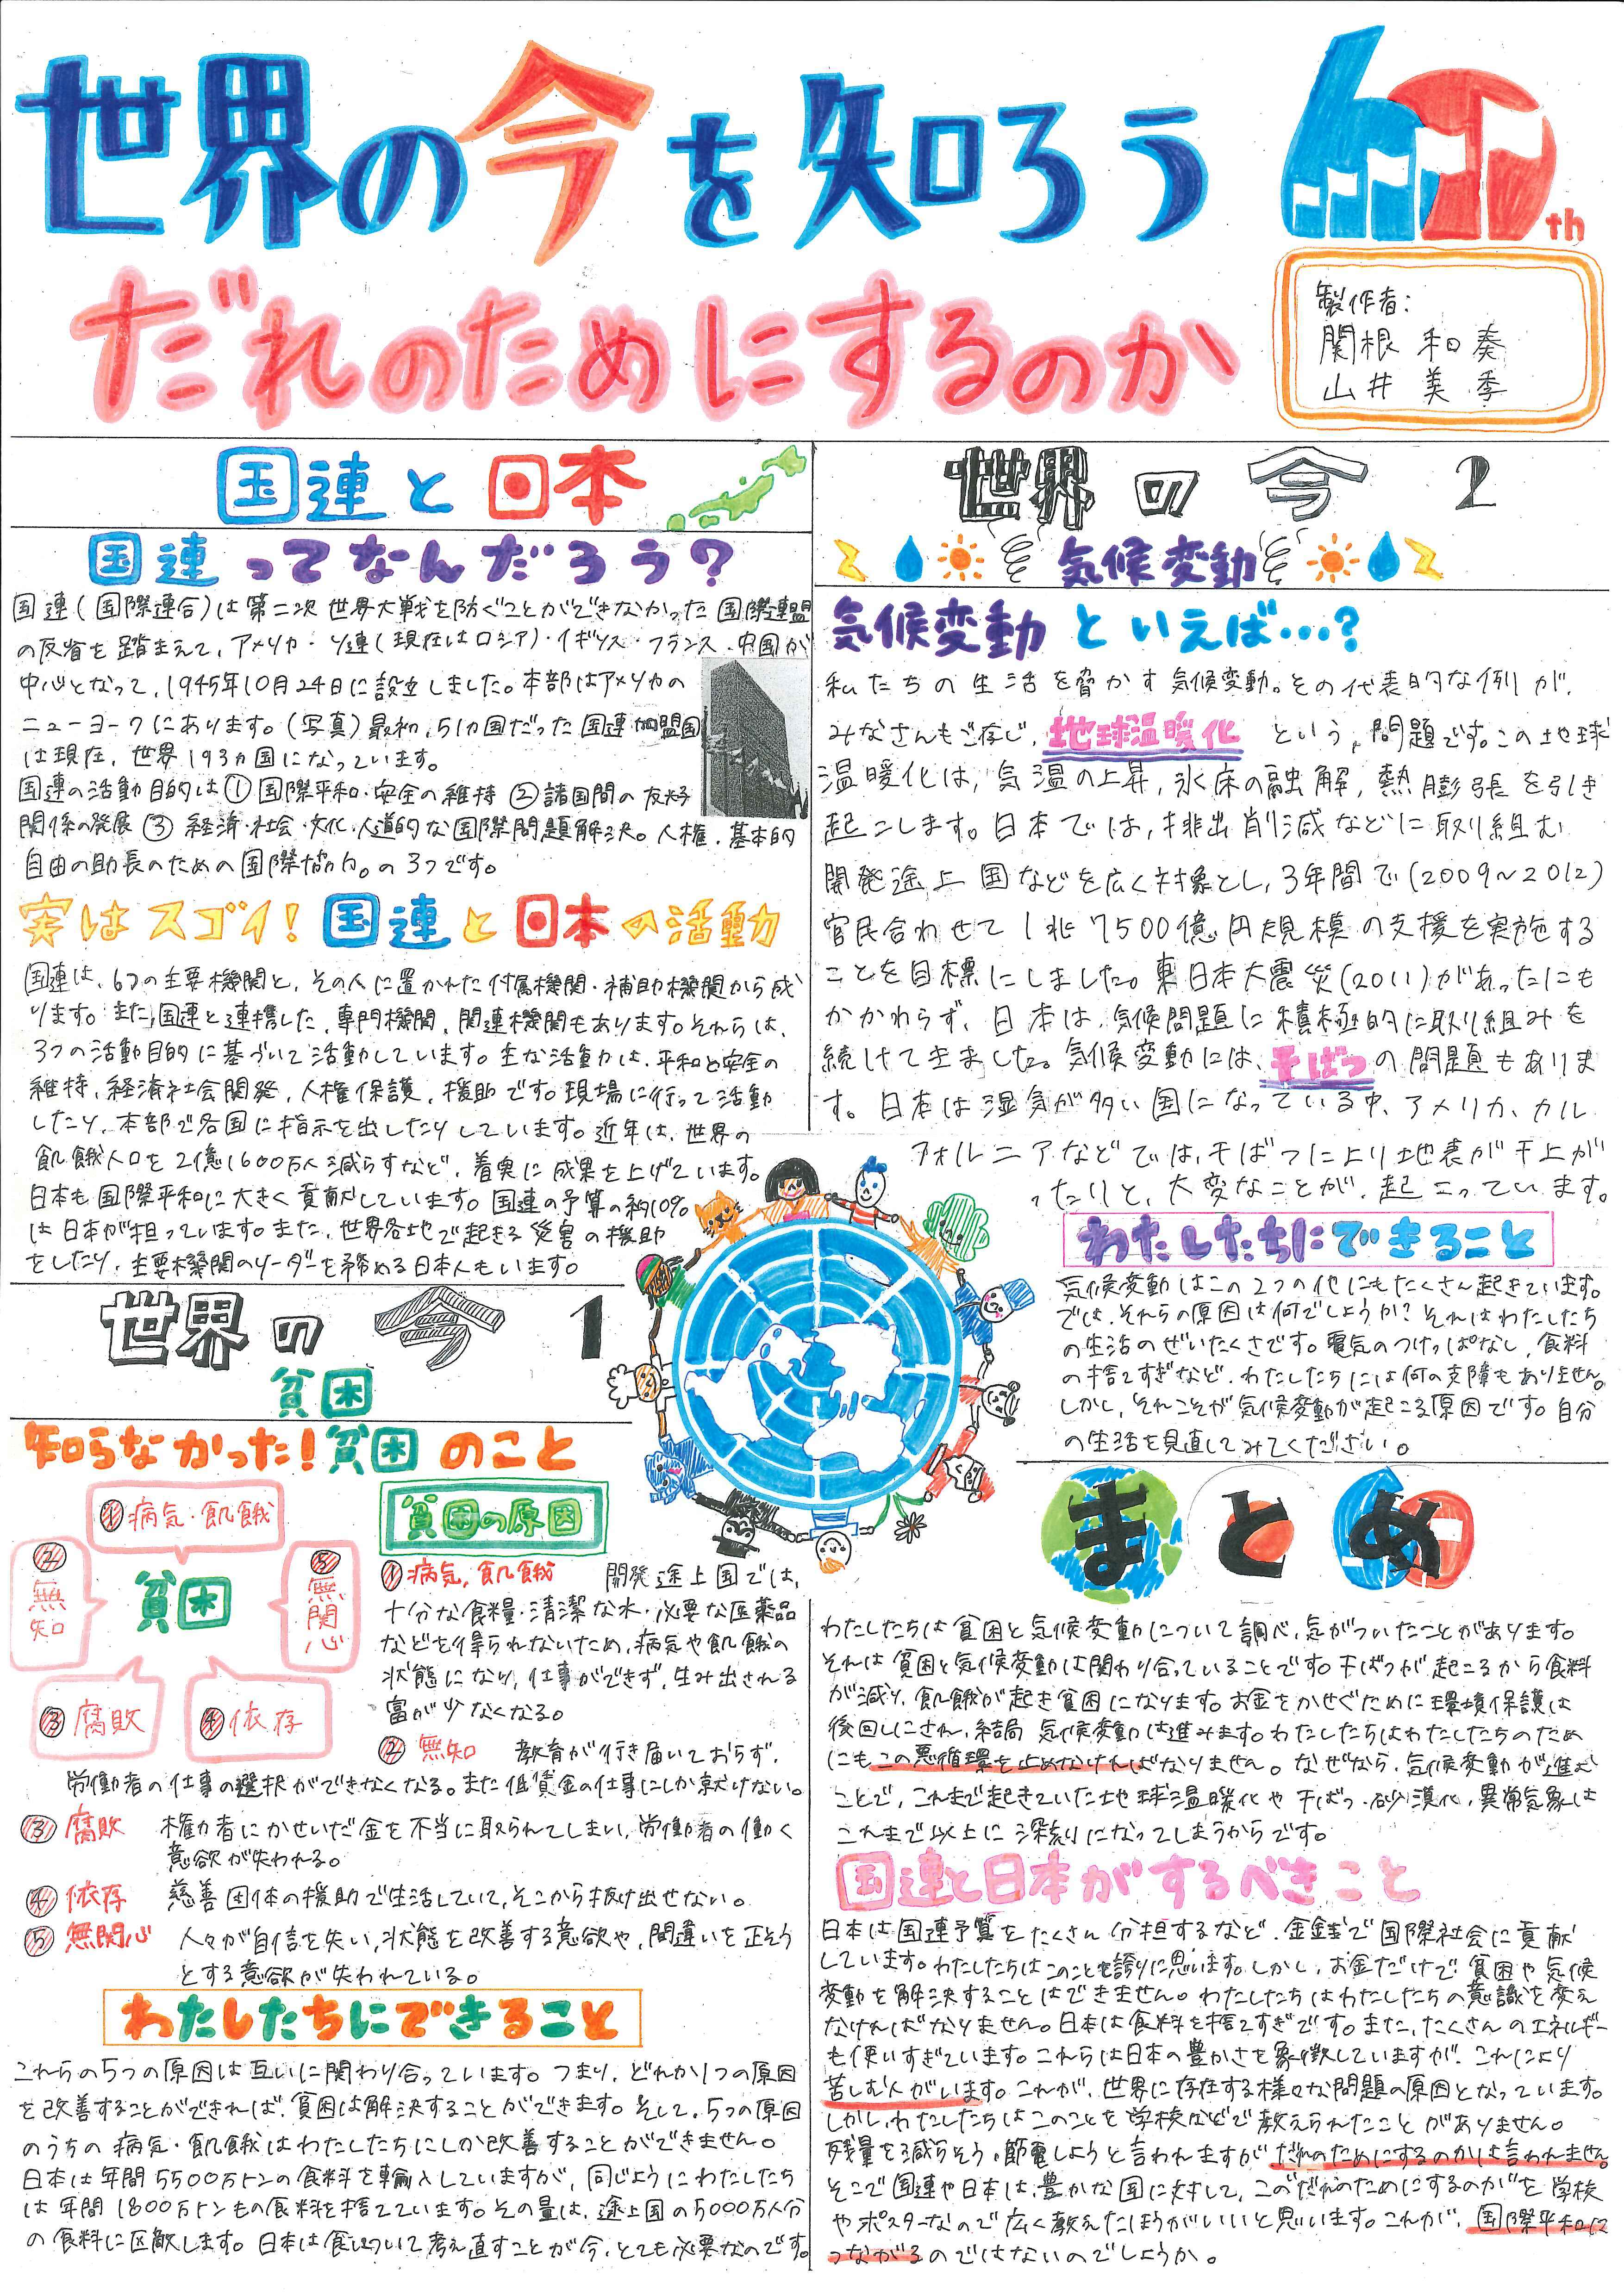 小 中学生のアイデア募集 これからの国連と日本の取組についての壁新聞コンテスト開催 第2回小学生 中学生 国連壁新聞 全国大会6月8日 スタート 外務省のプレスリリース